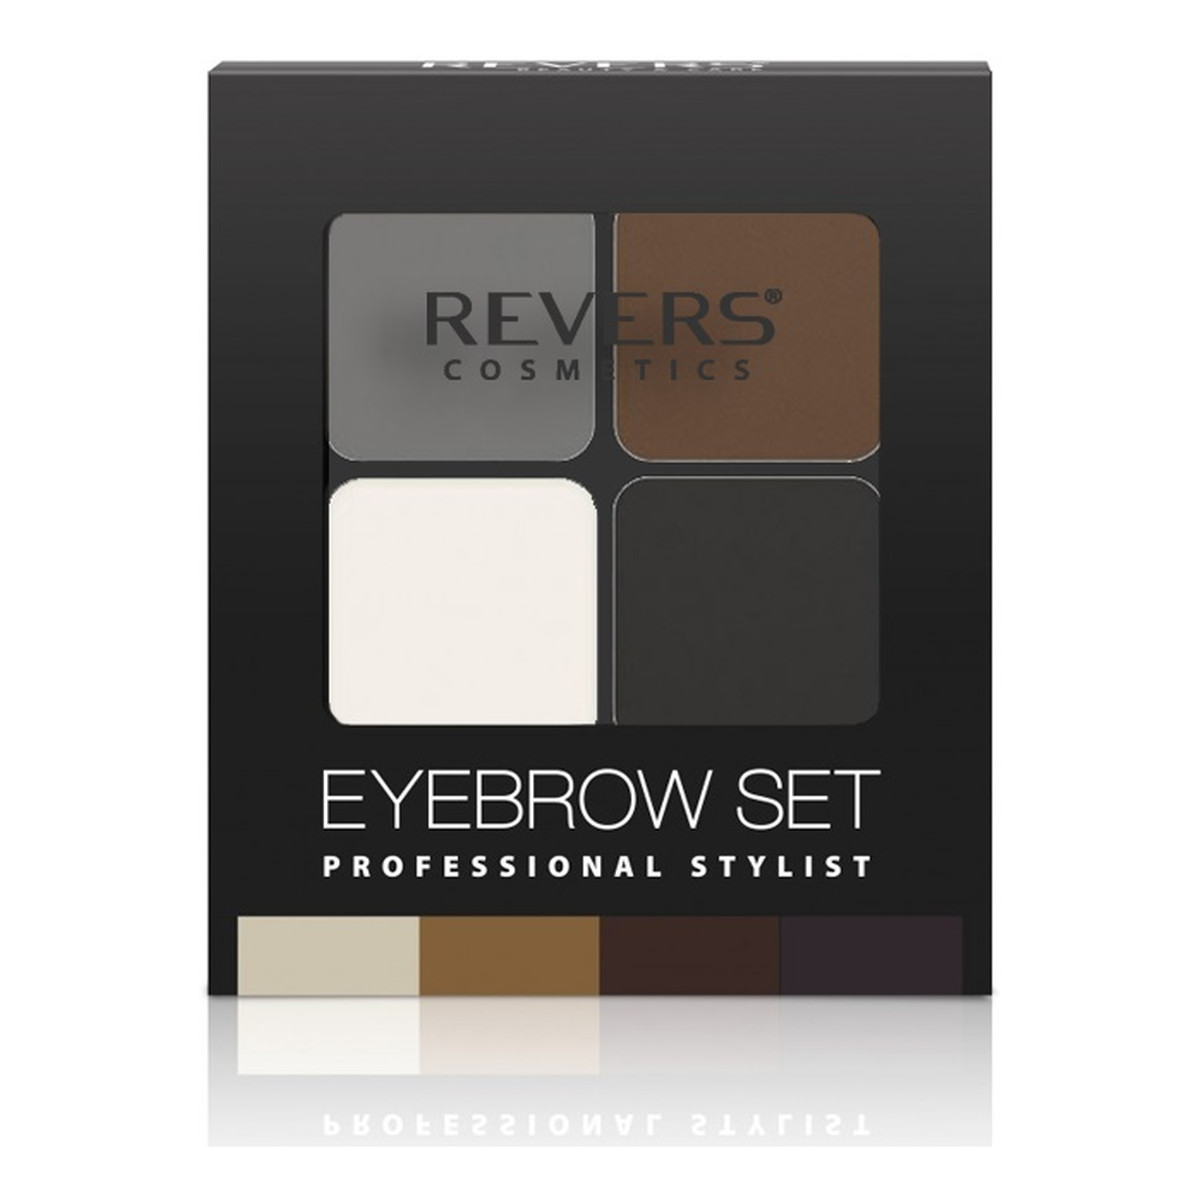 Revers Eyebrow Set Professional Stylist Zestaw Do Stylizacji Brwi 18g